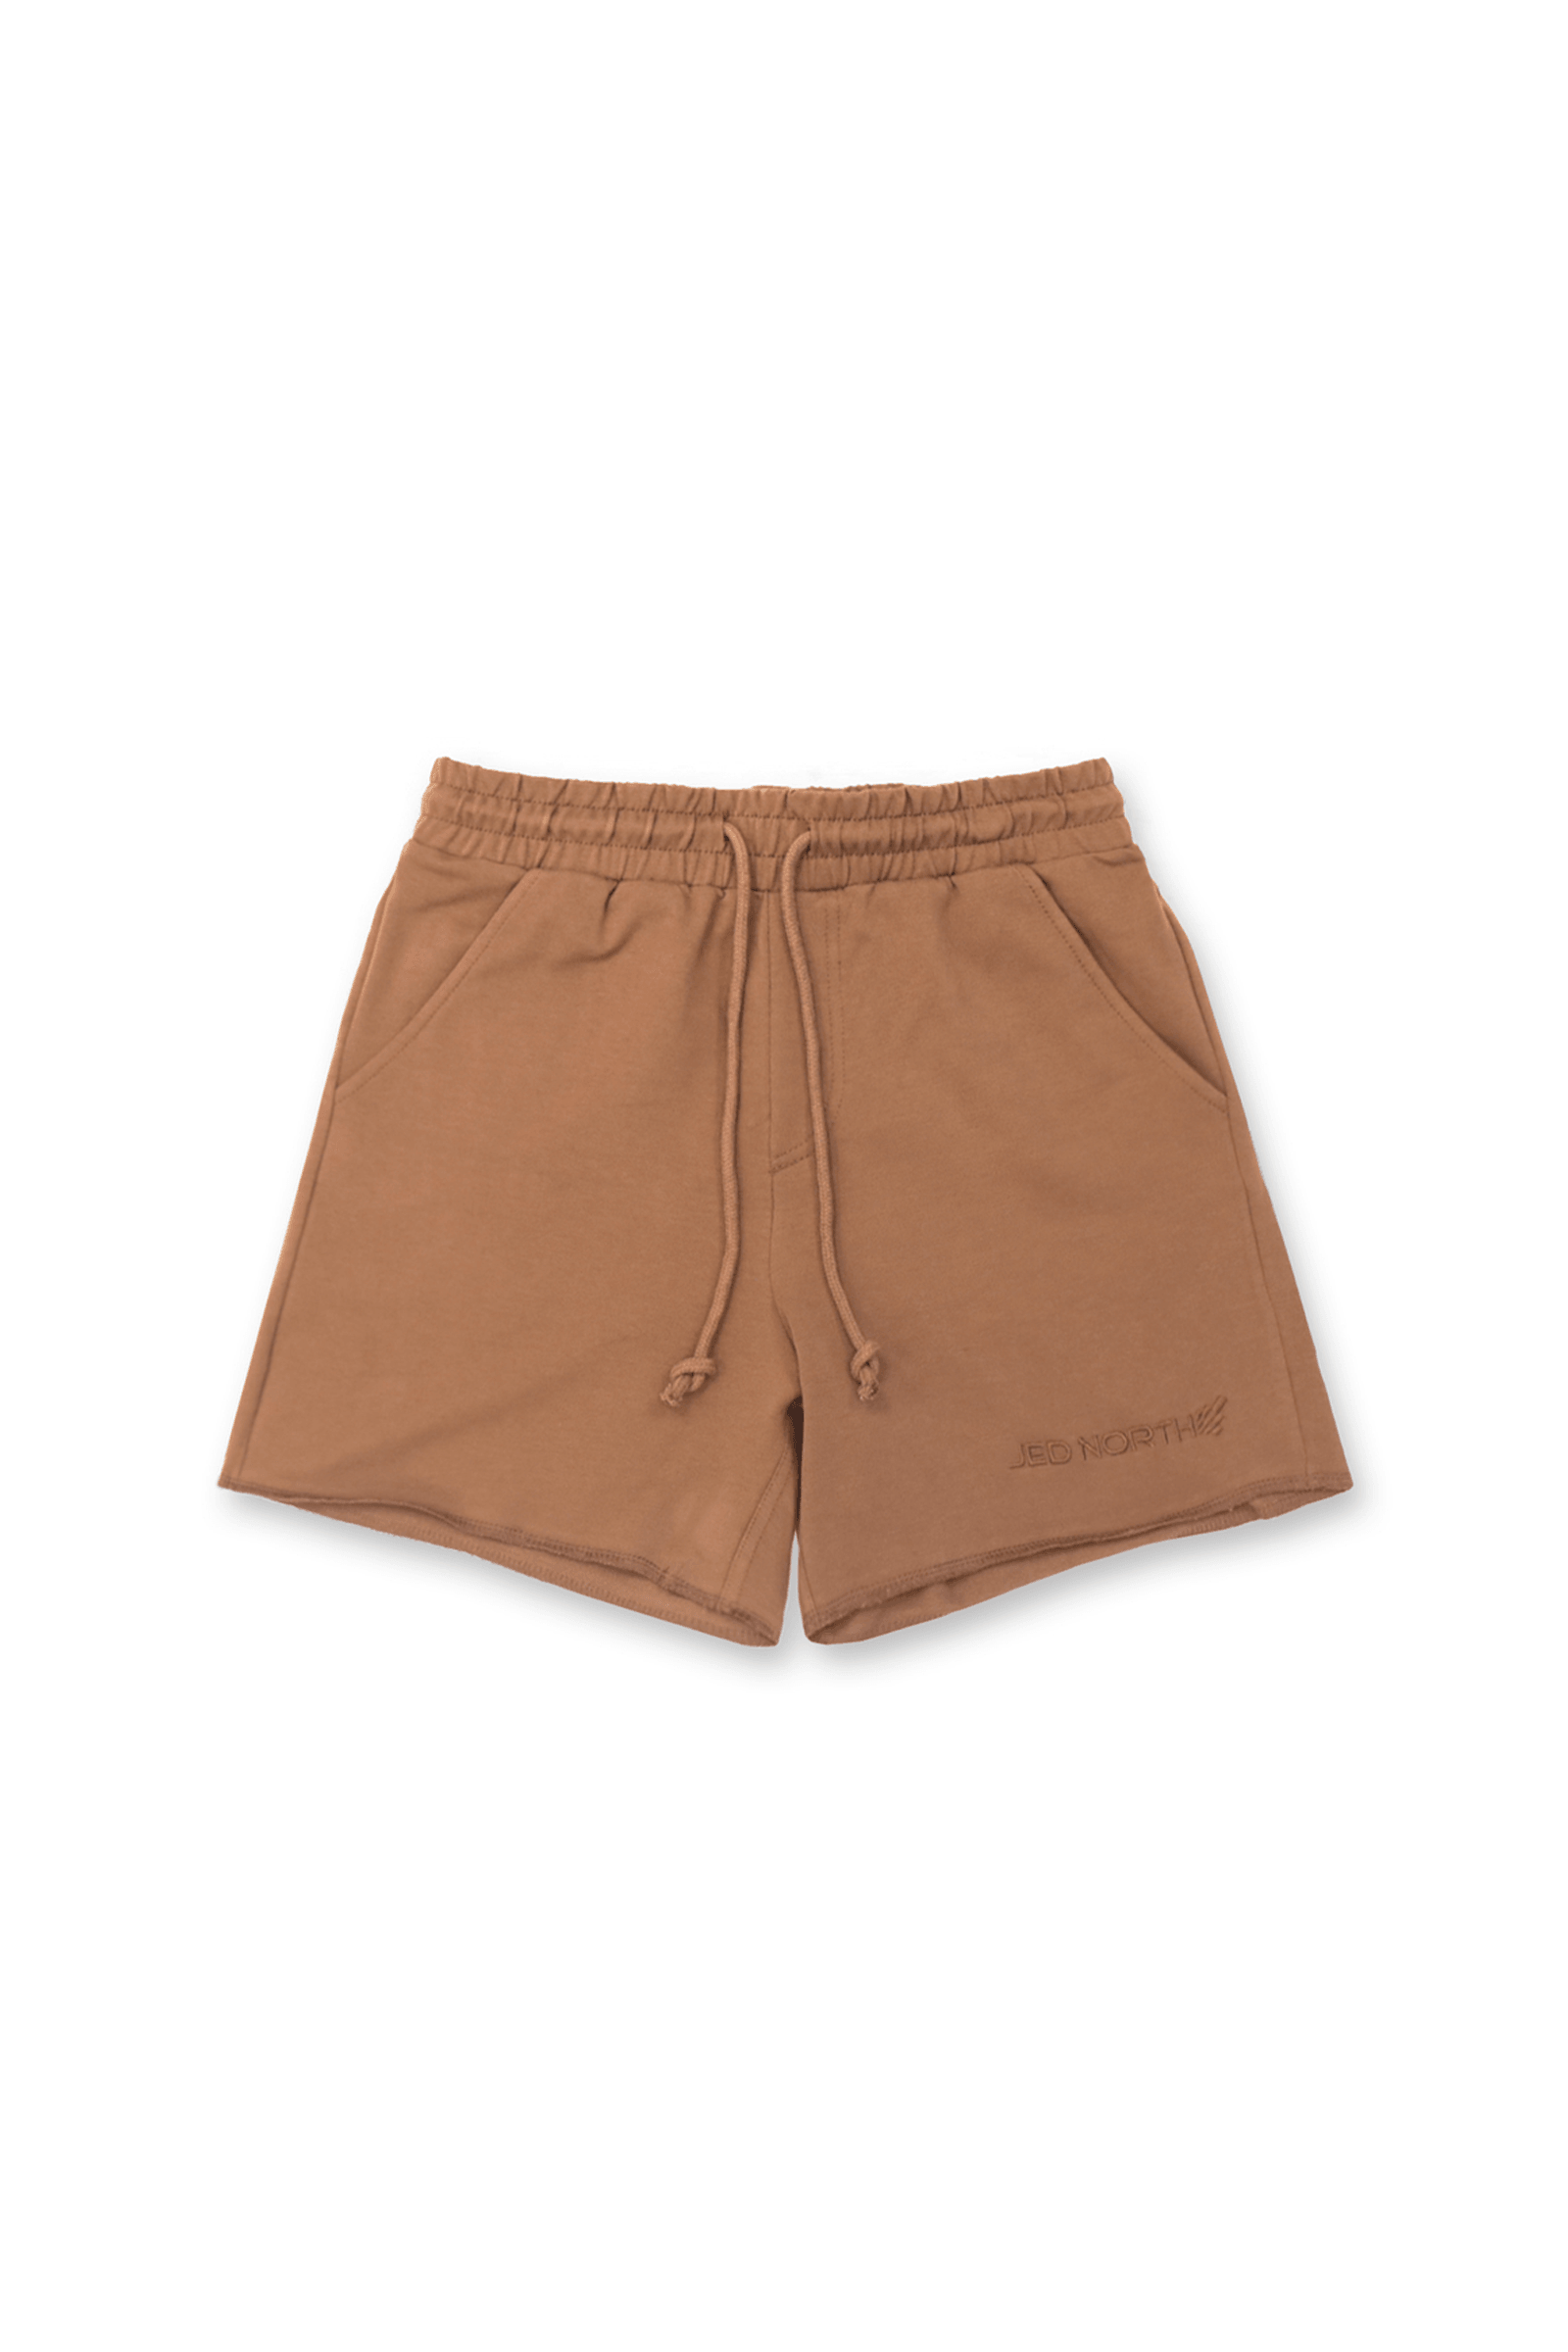 Vintage Men Denim Shorts Orange Shorts Classic Denim Shorts Comfortable  Mens Shorts Cotton Denim Shorts Size Large -  Canada